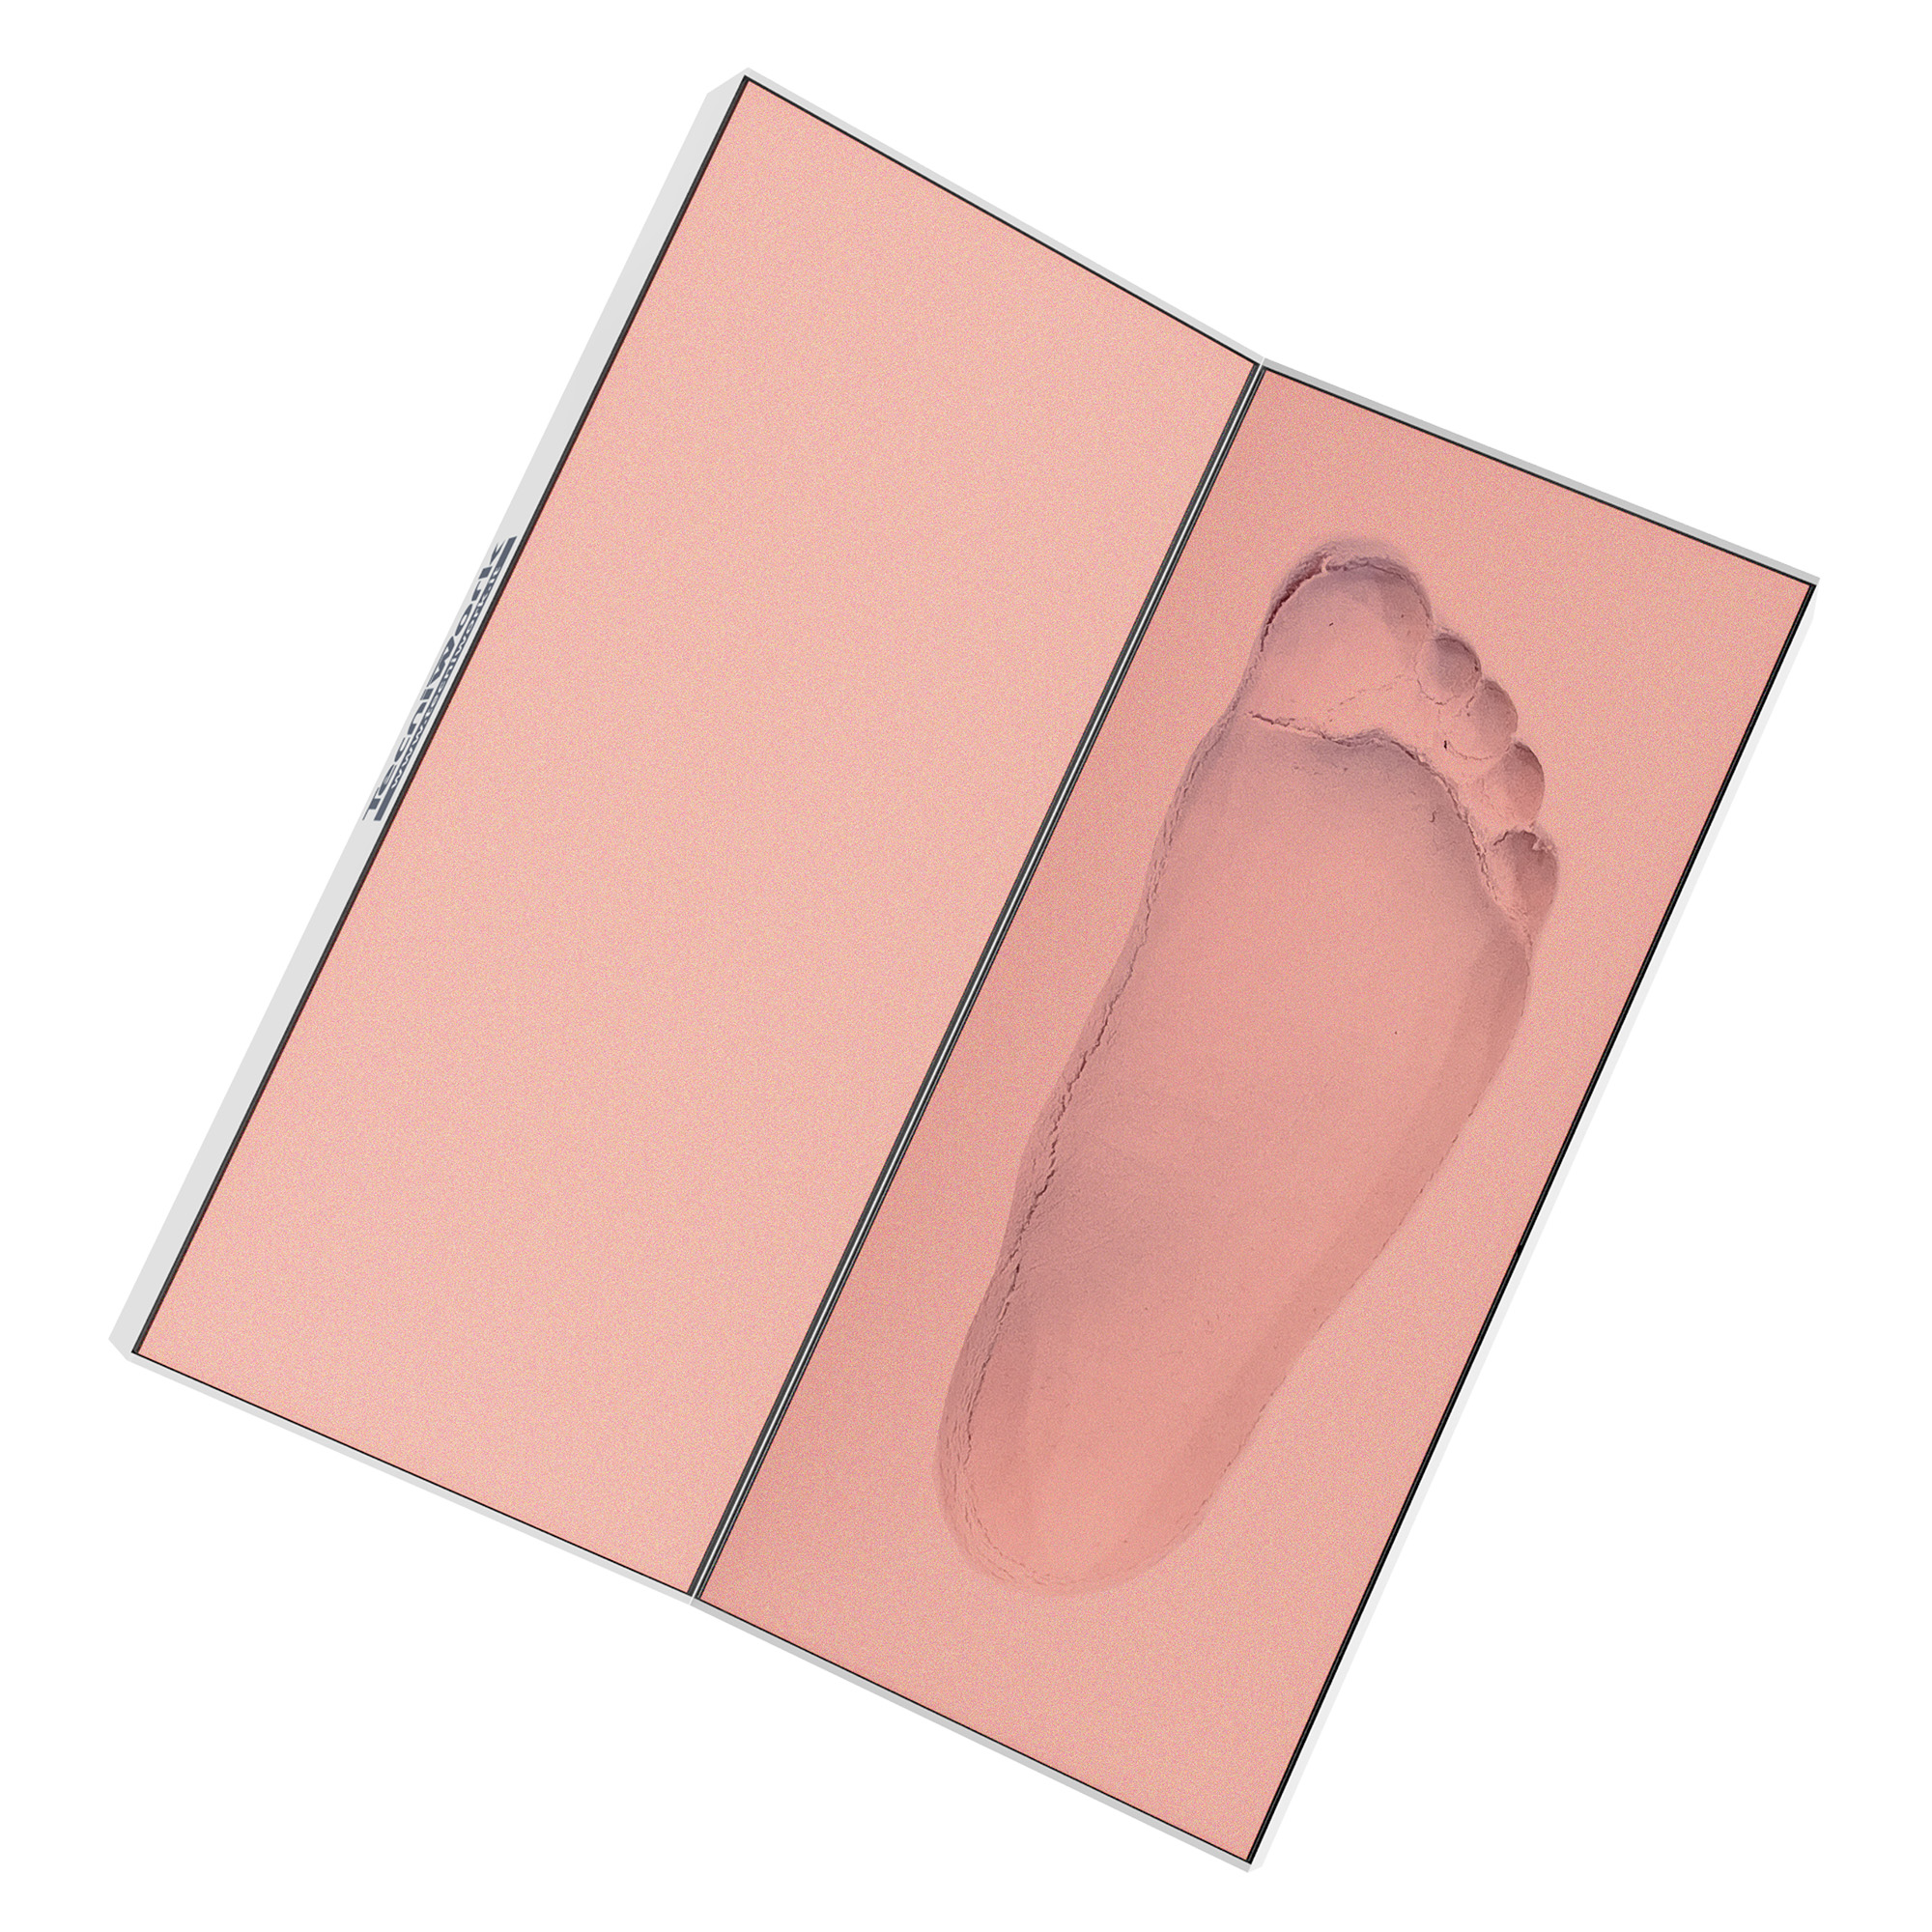 Mousse phénolique Tecniwork pour empreintes des pieds avec moules ou plâtres 1 pc